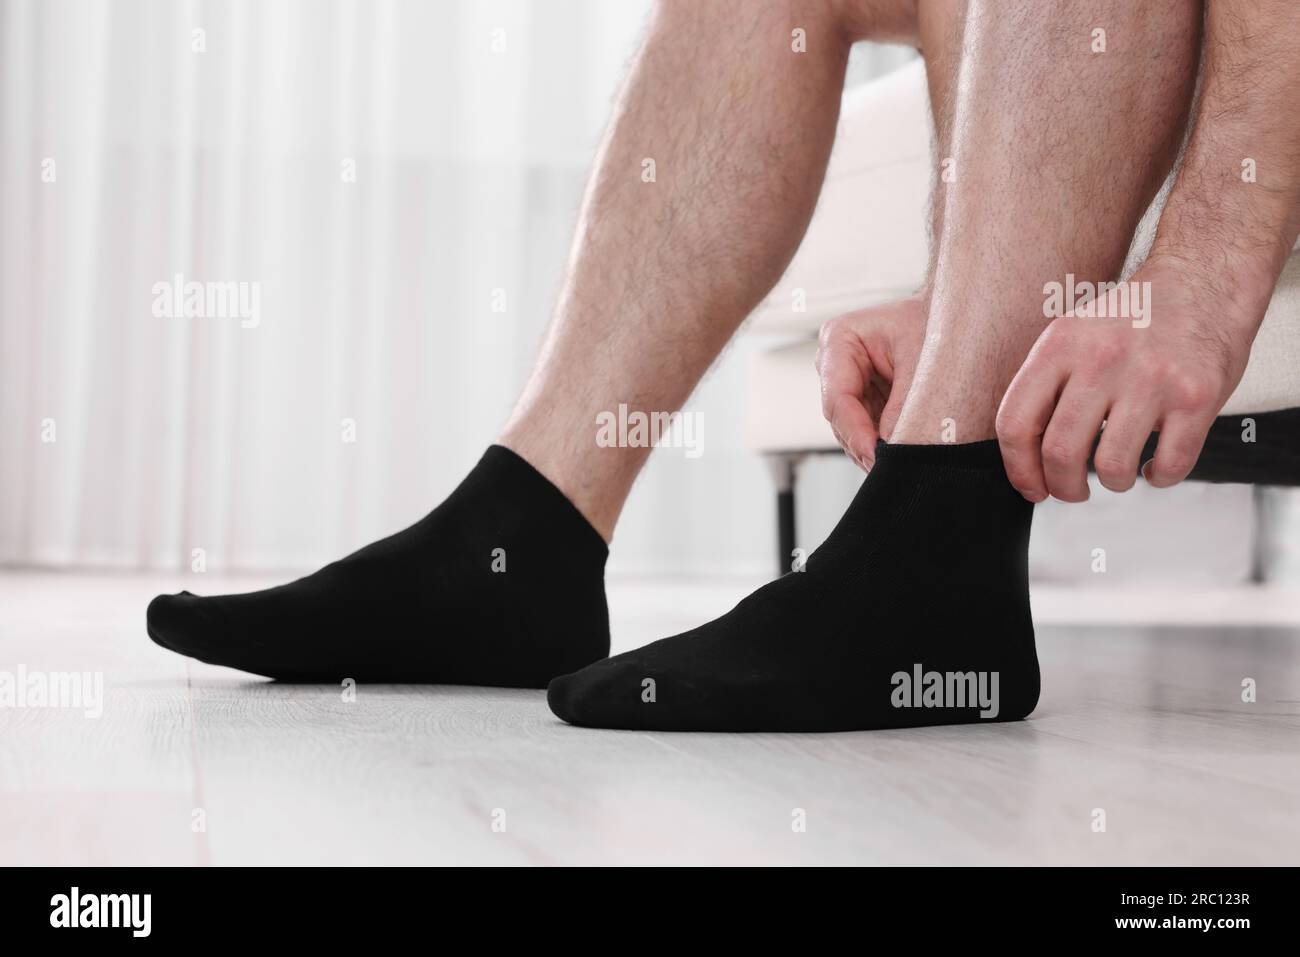 Hombre poniéndose calcetines negros en casa, closeup Fotografía de